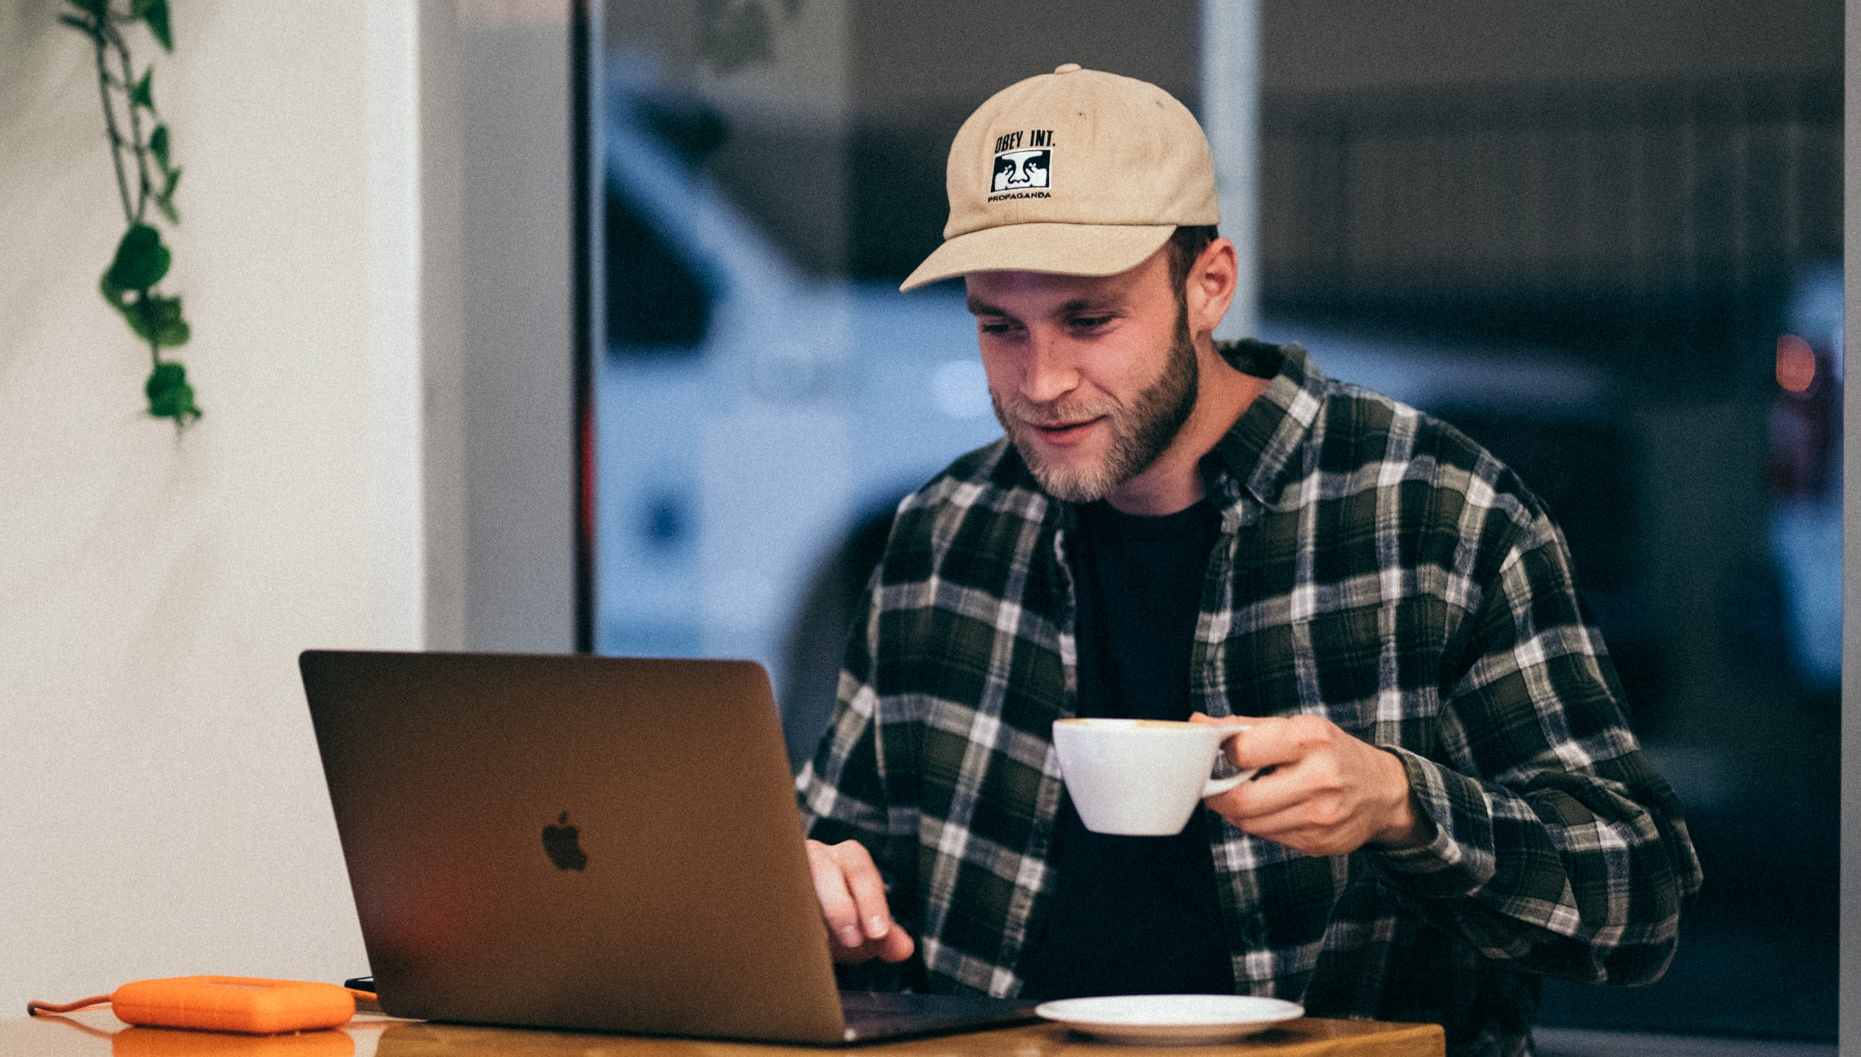 Καφές στο γραφείο: Πρόσφερε στην ομάδα σου τον πιο γευστικό και ποιοτικό καφέ